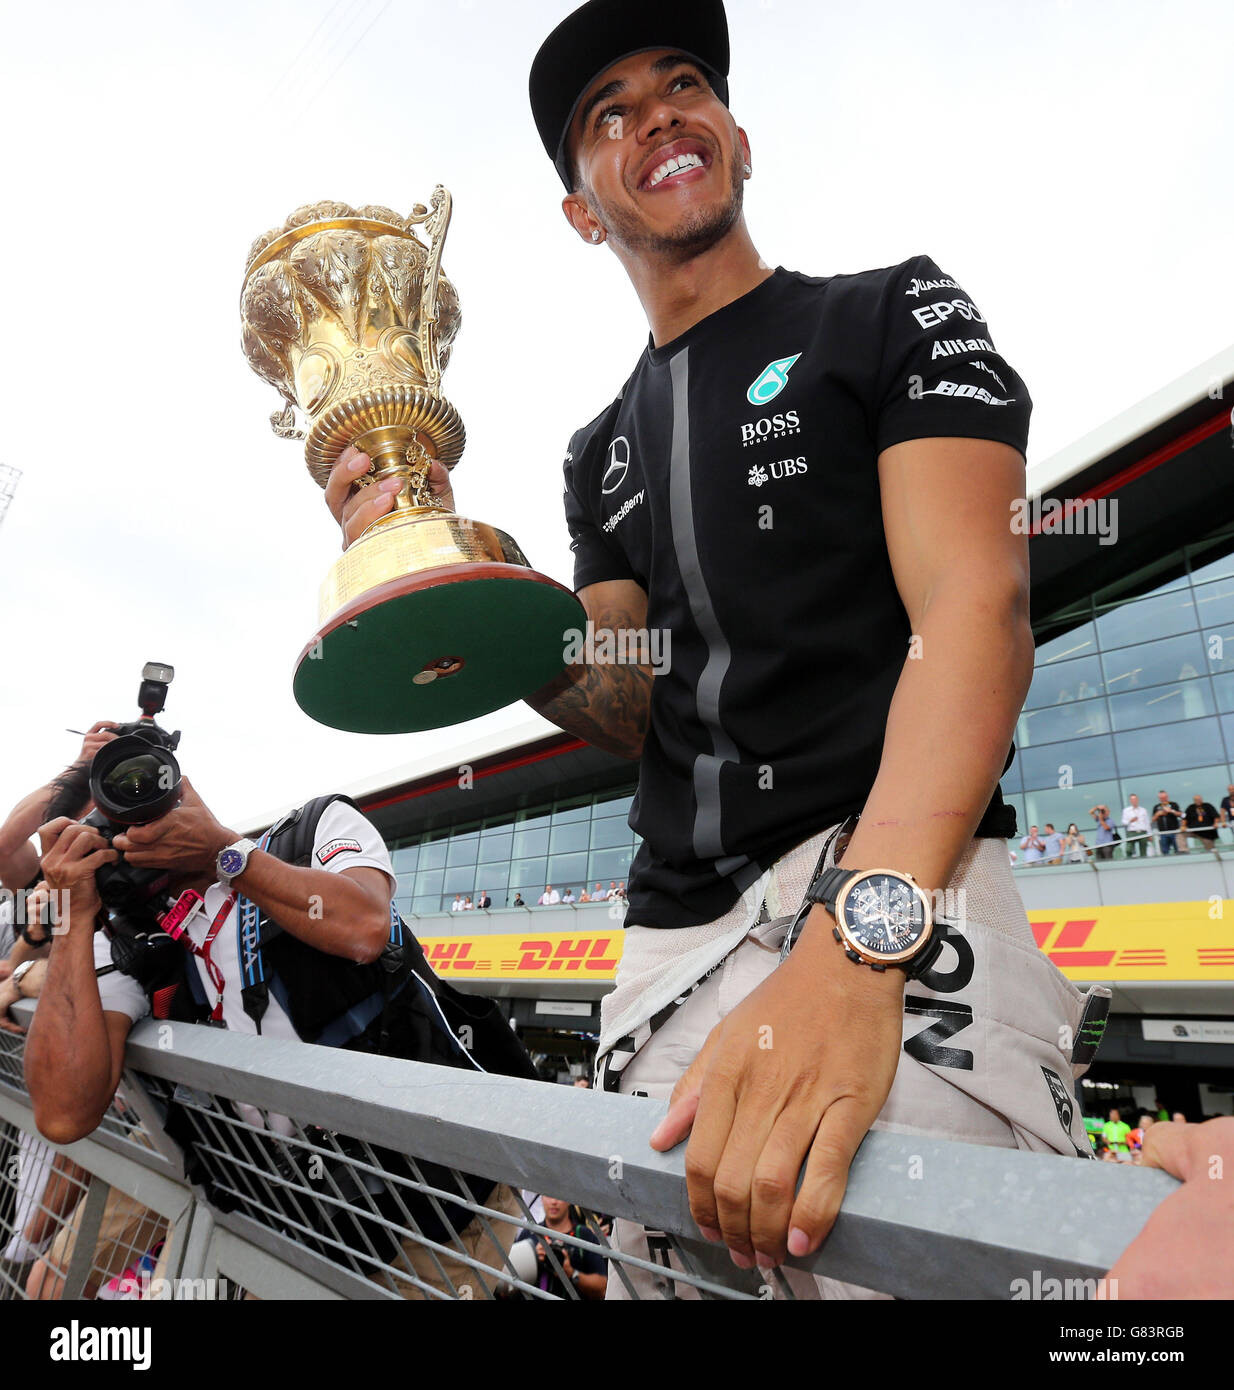 Motorsport - Formel-1-Weltmeisterschaft - Großer Preis Von Großbritannien 2015 - Silverstone Circuit. Mercedes-Pilot Lewis Hamilton feiert seinen Sieg beim Grand Prix von Großbritannien 2015 auf dem Silverstone Circuit in Towcester. Stockfoto